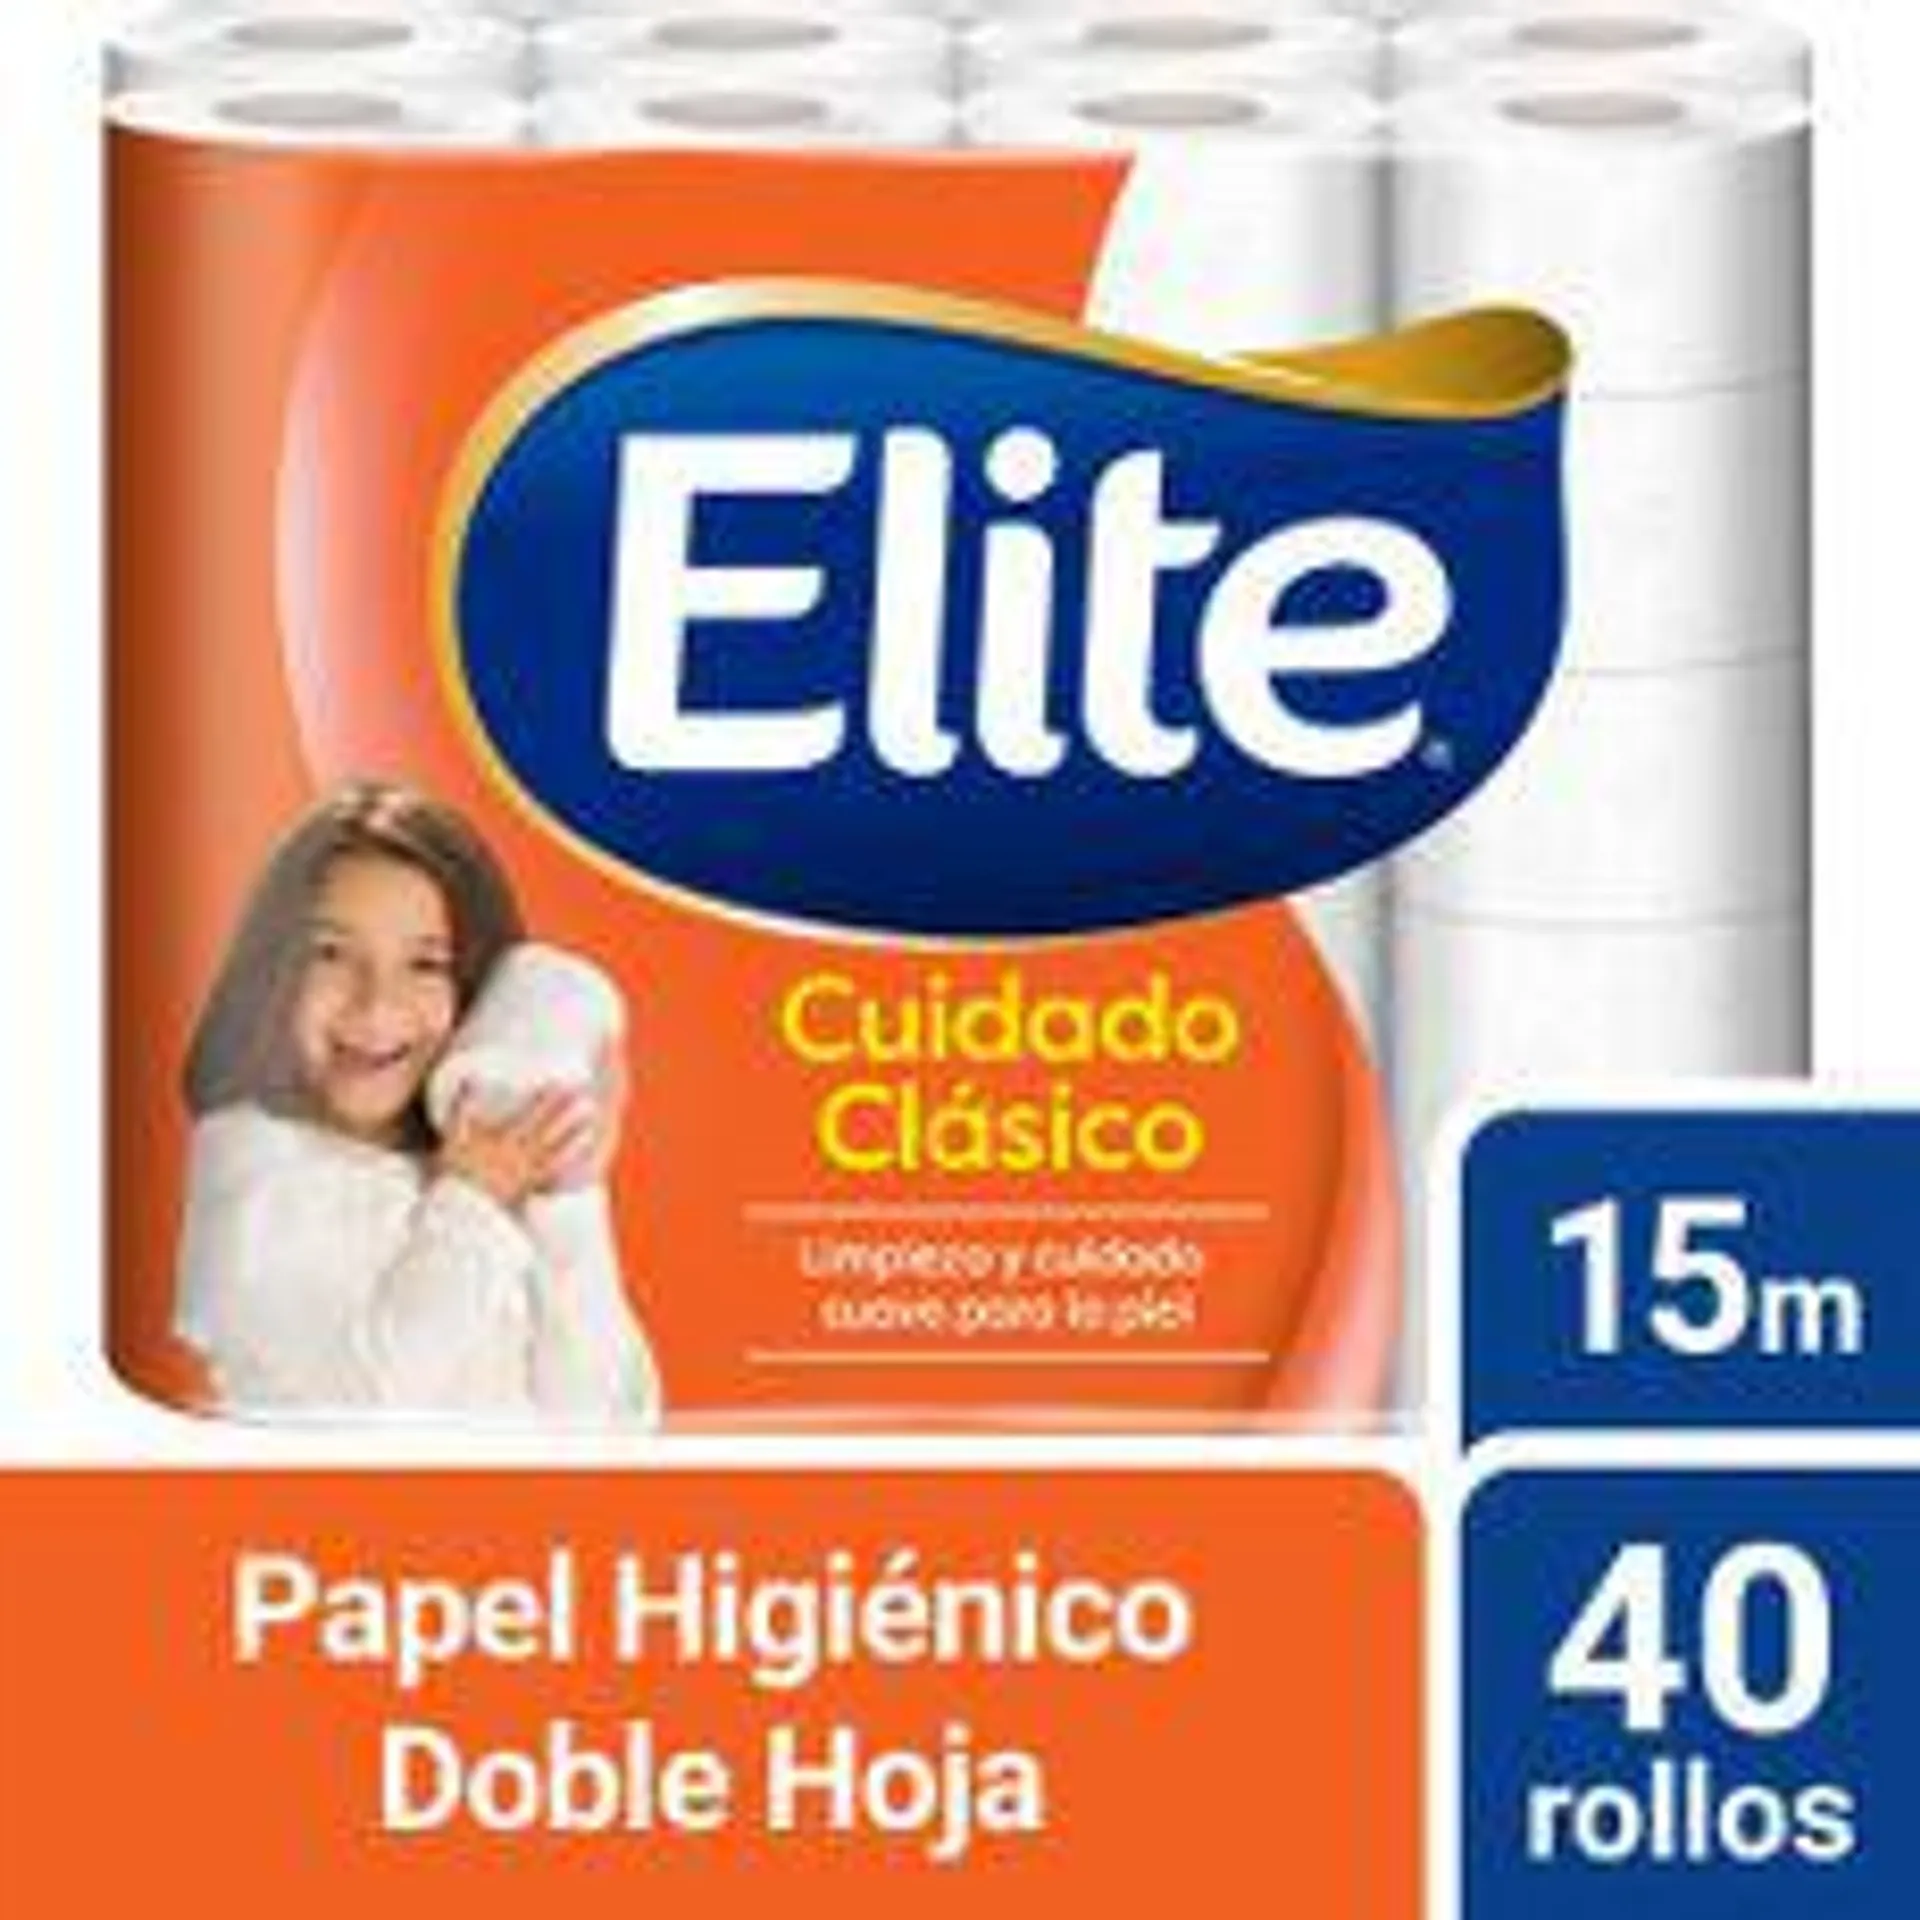 Papel Higiénico Doble Hoja Elite Cuidado Clásico 40un